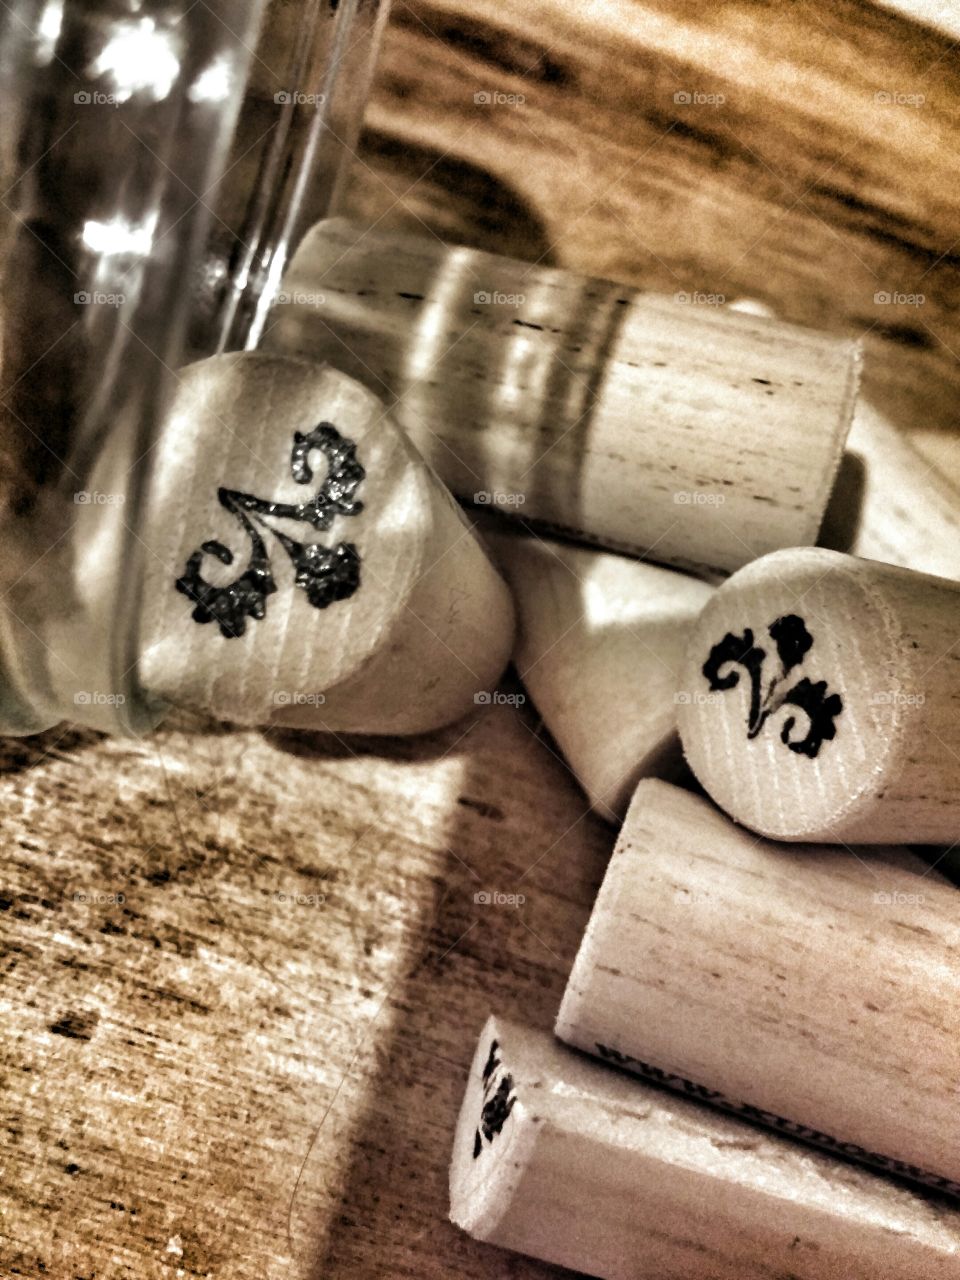 wine corks. ..